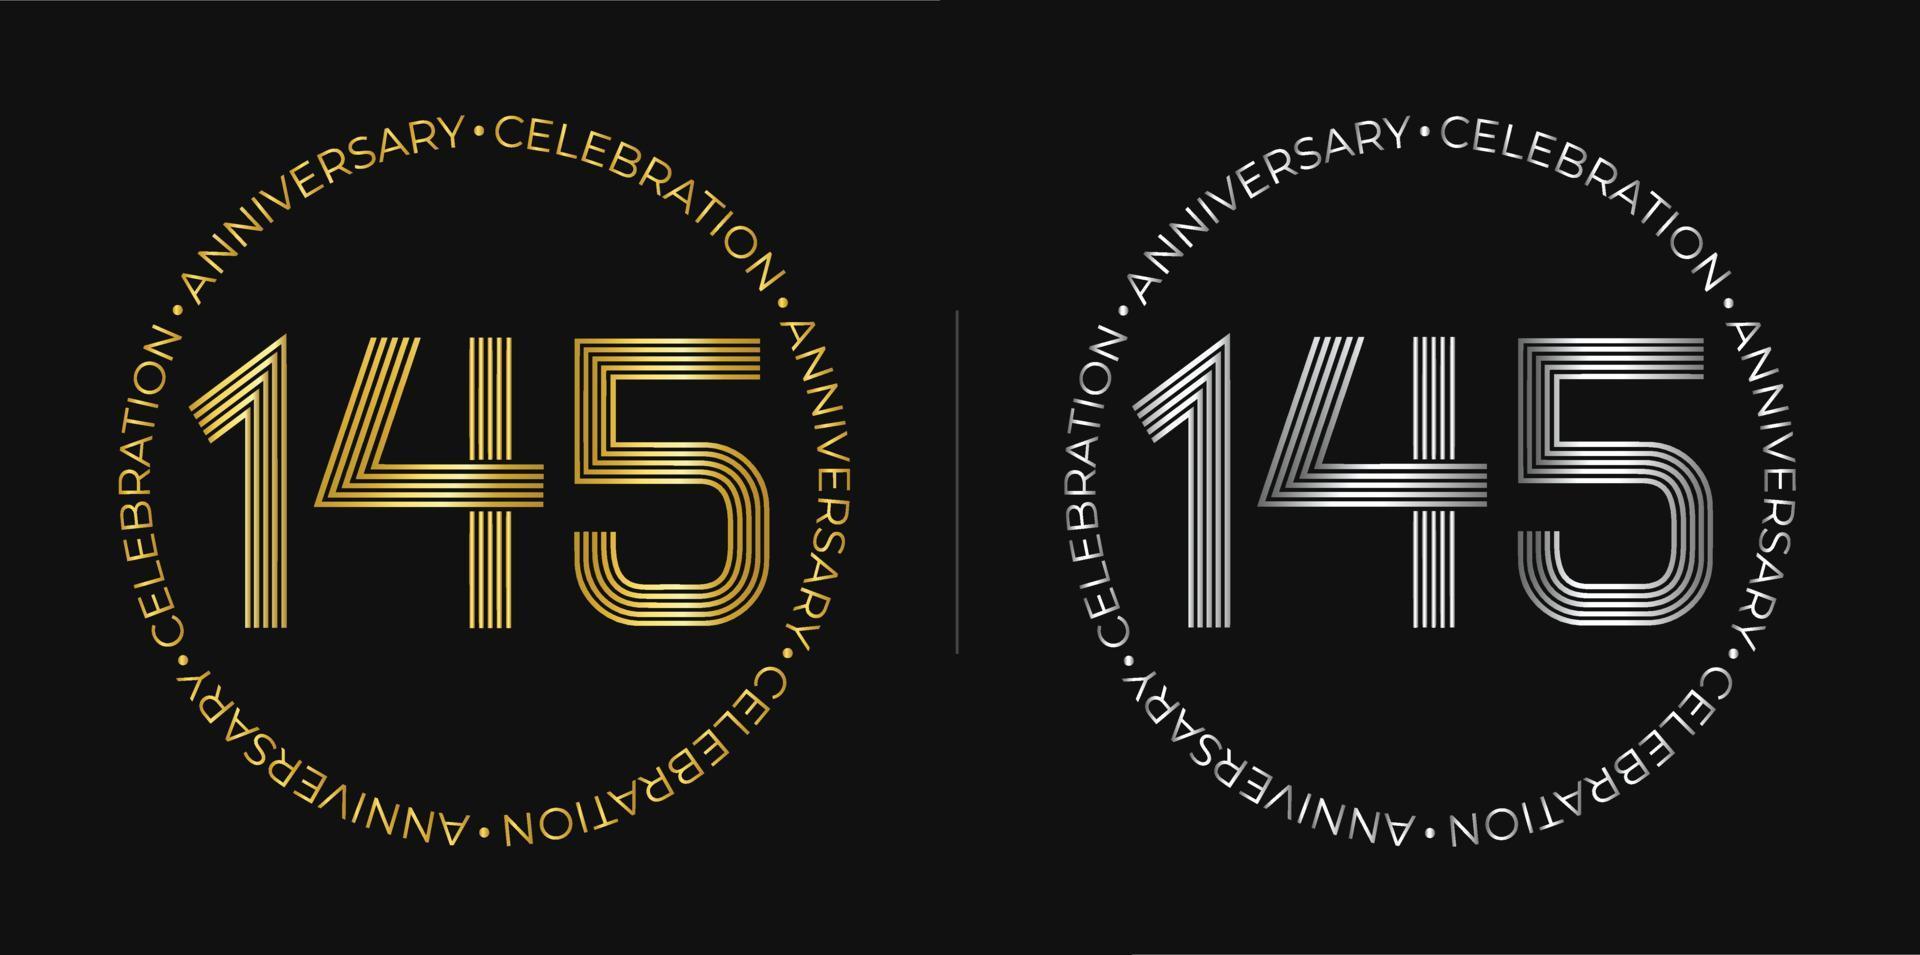 145 cumpleaños. Banner de celebración de aniversario de ciento cuarenta y cinco años en colores dorado y plateado. logo circular con diseño de números originales en líneas elegantes. vector